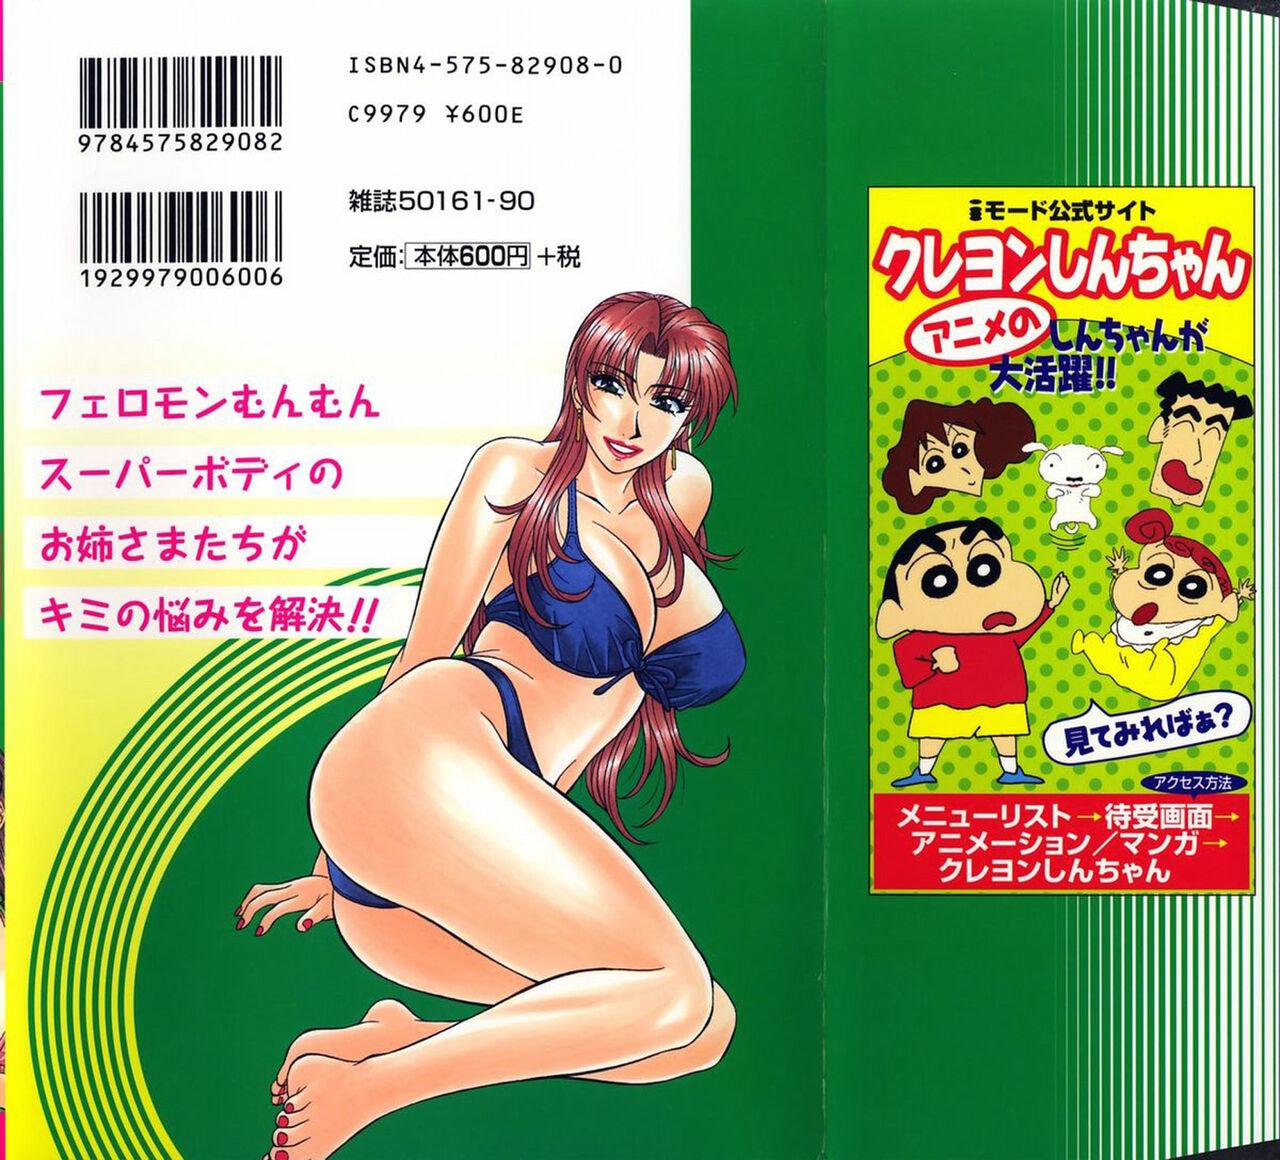 Cheat Kochira Momoiro Company Vol. 1 Milfporn - Picture 2